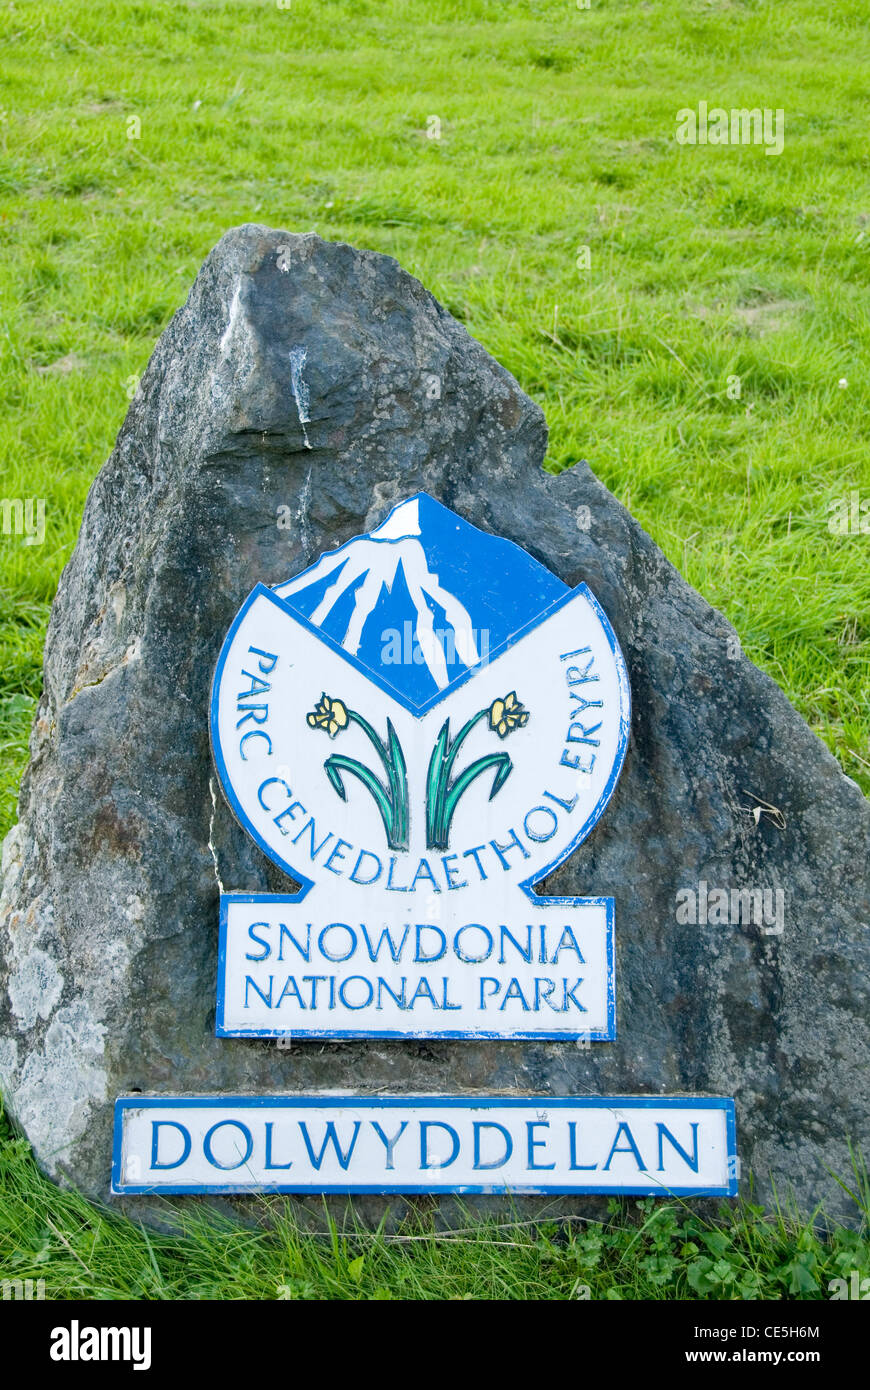 Dolwyddelan, Snowdonia National Park Sign on Rock, Betws y Coed, Gwynedd, North Wales, UK Stock Photo